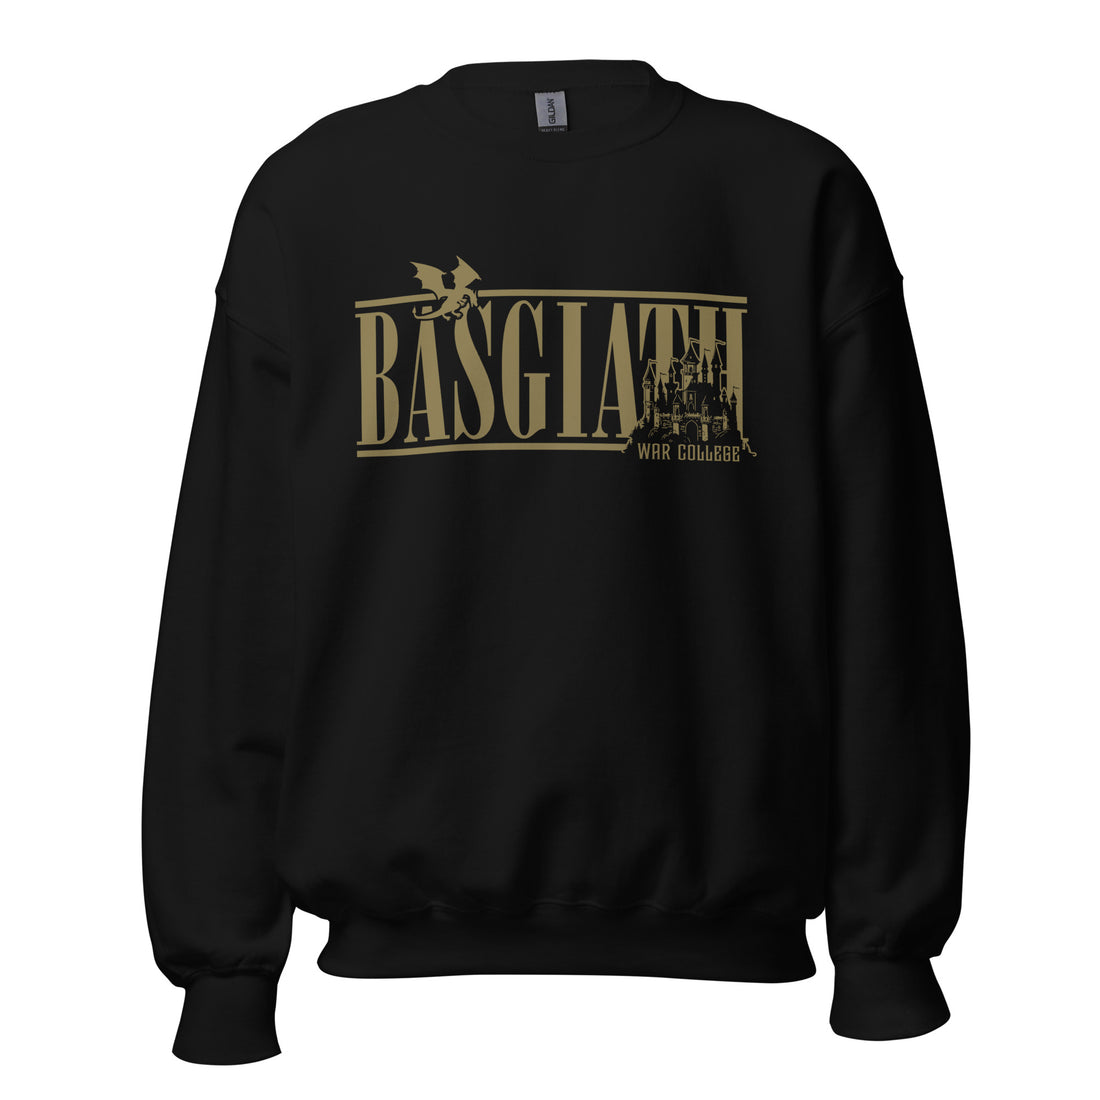 Basgiath War College Location Sweatshirt | Fourth Wing Merch